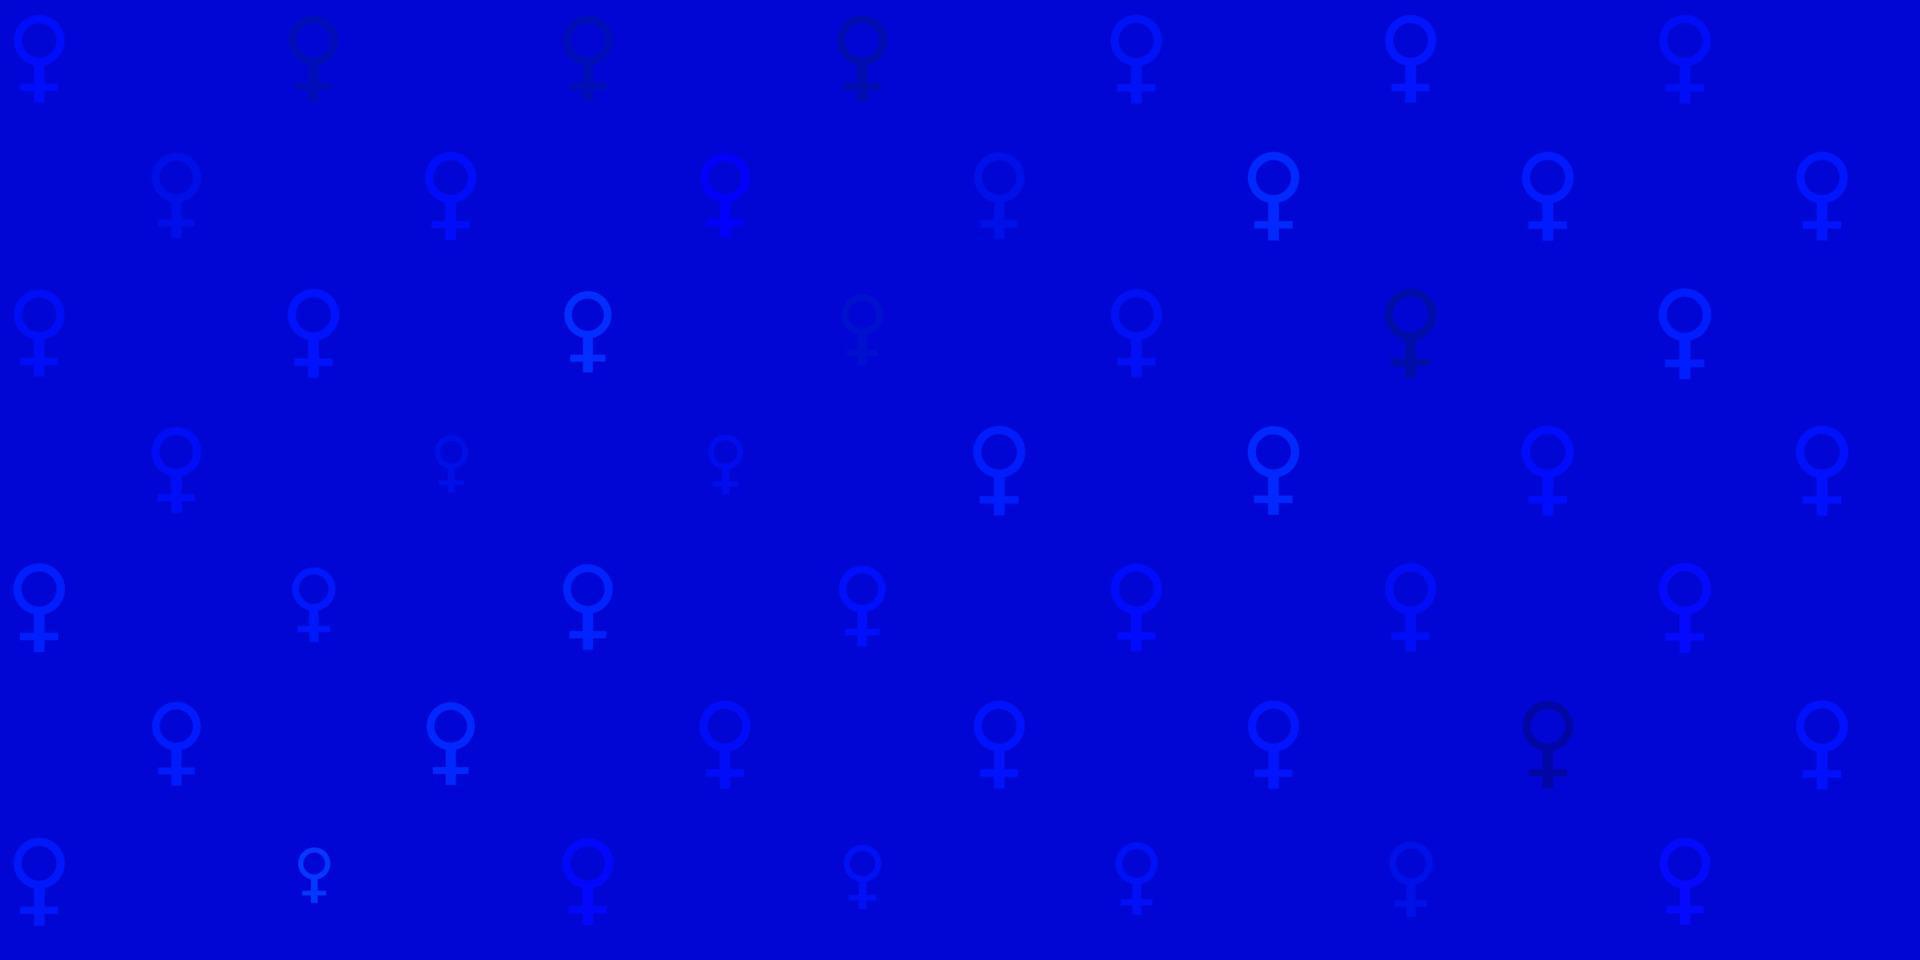 struttura di vettore blu chiaro con simboli di diritti delle donne.